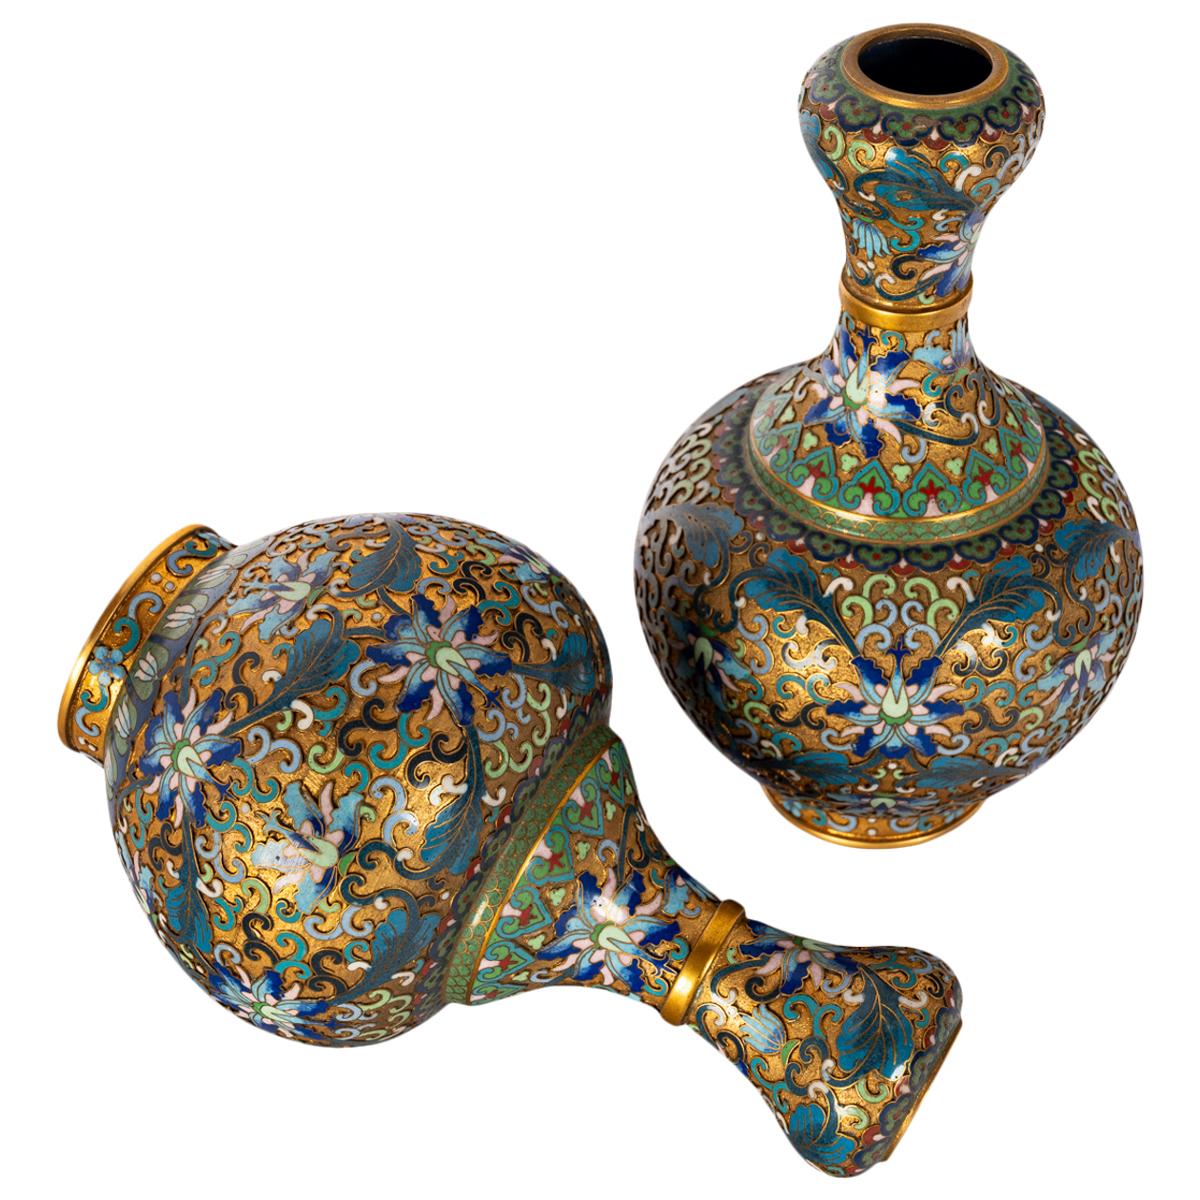 Enamel Pair Antique Chinese Qing Republic Dynasty Cloisonné Champlevé Vases 1910